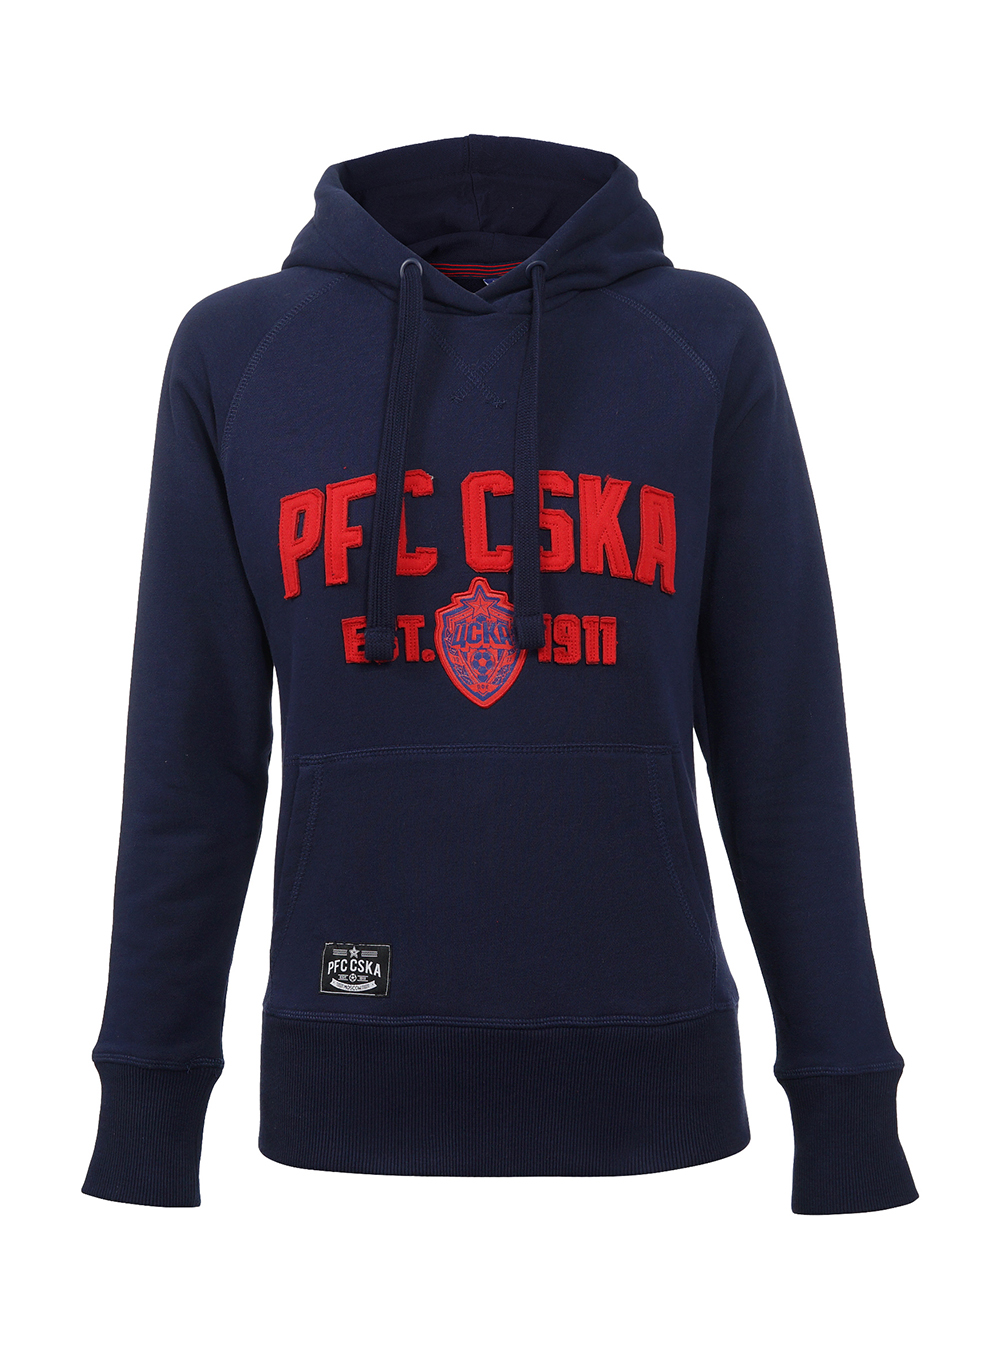 Толстовка женская "PFC CSKA est.1911", цвет синий (S) от Cskashop